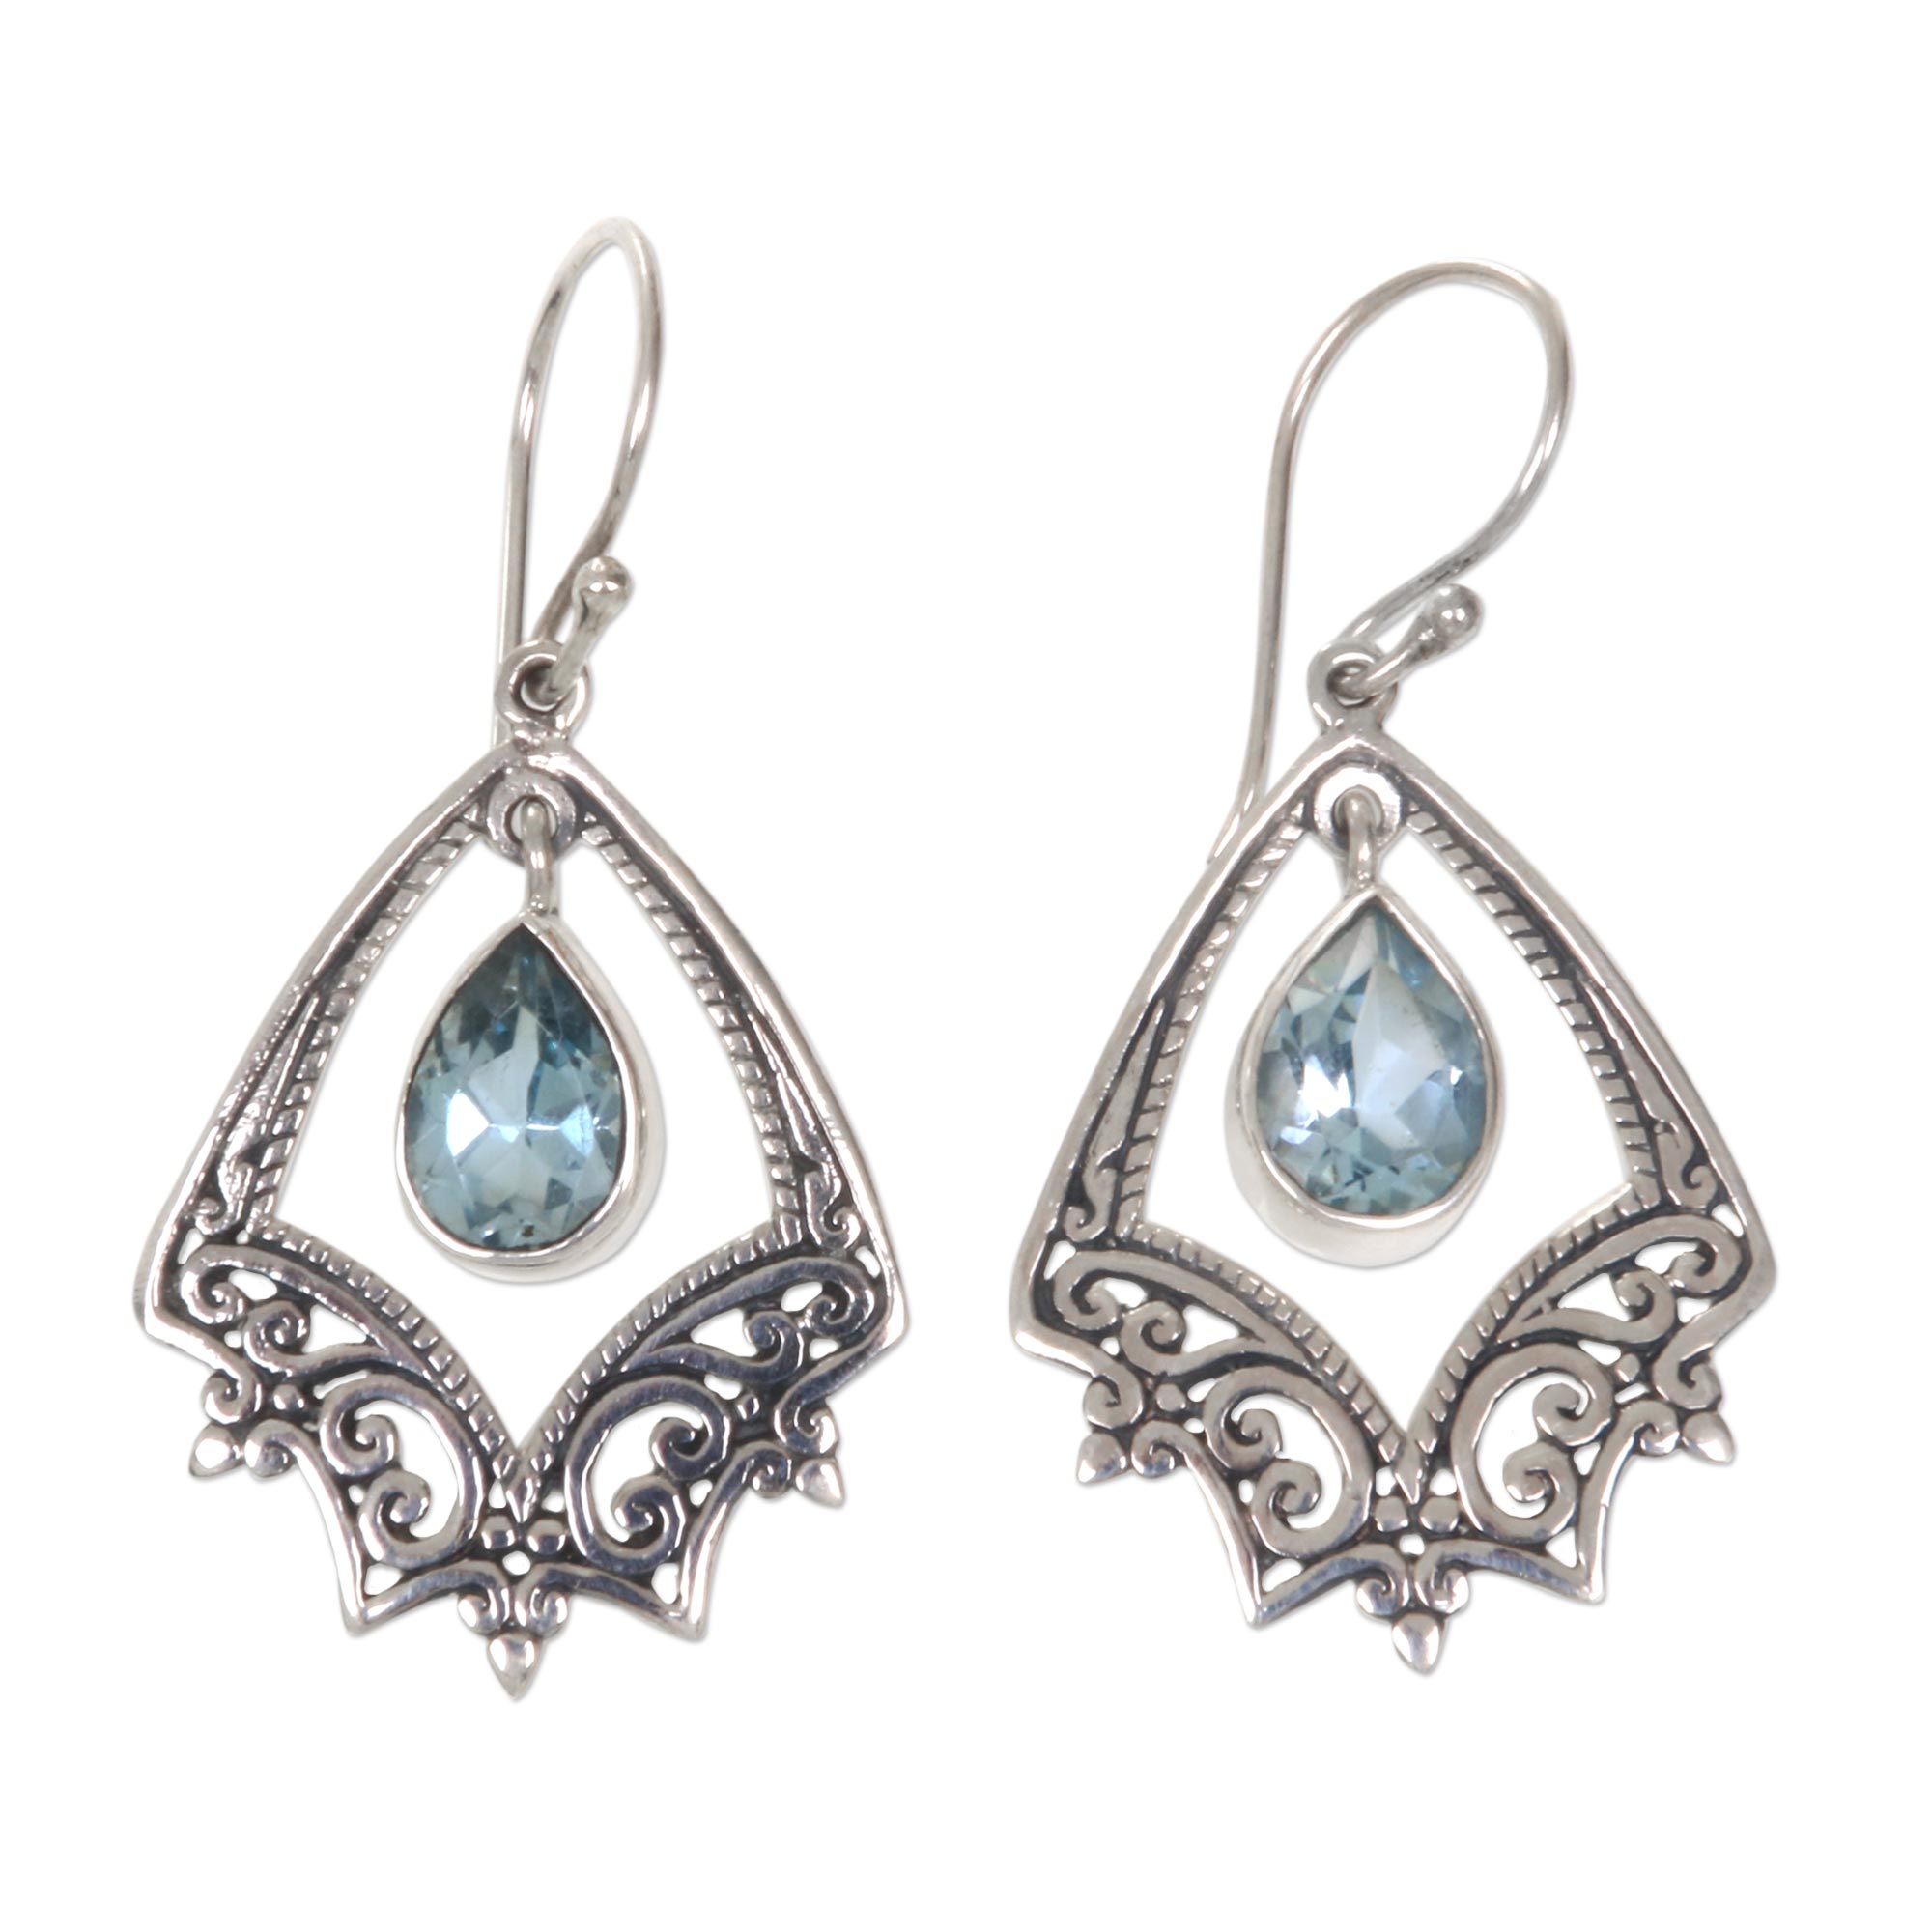 Silver Precious Treasure hook earrings